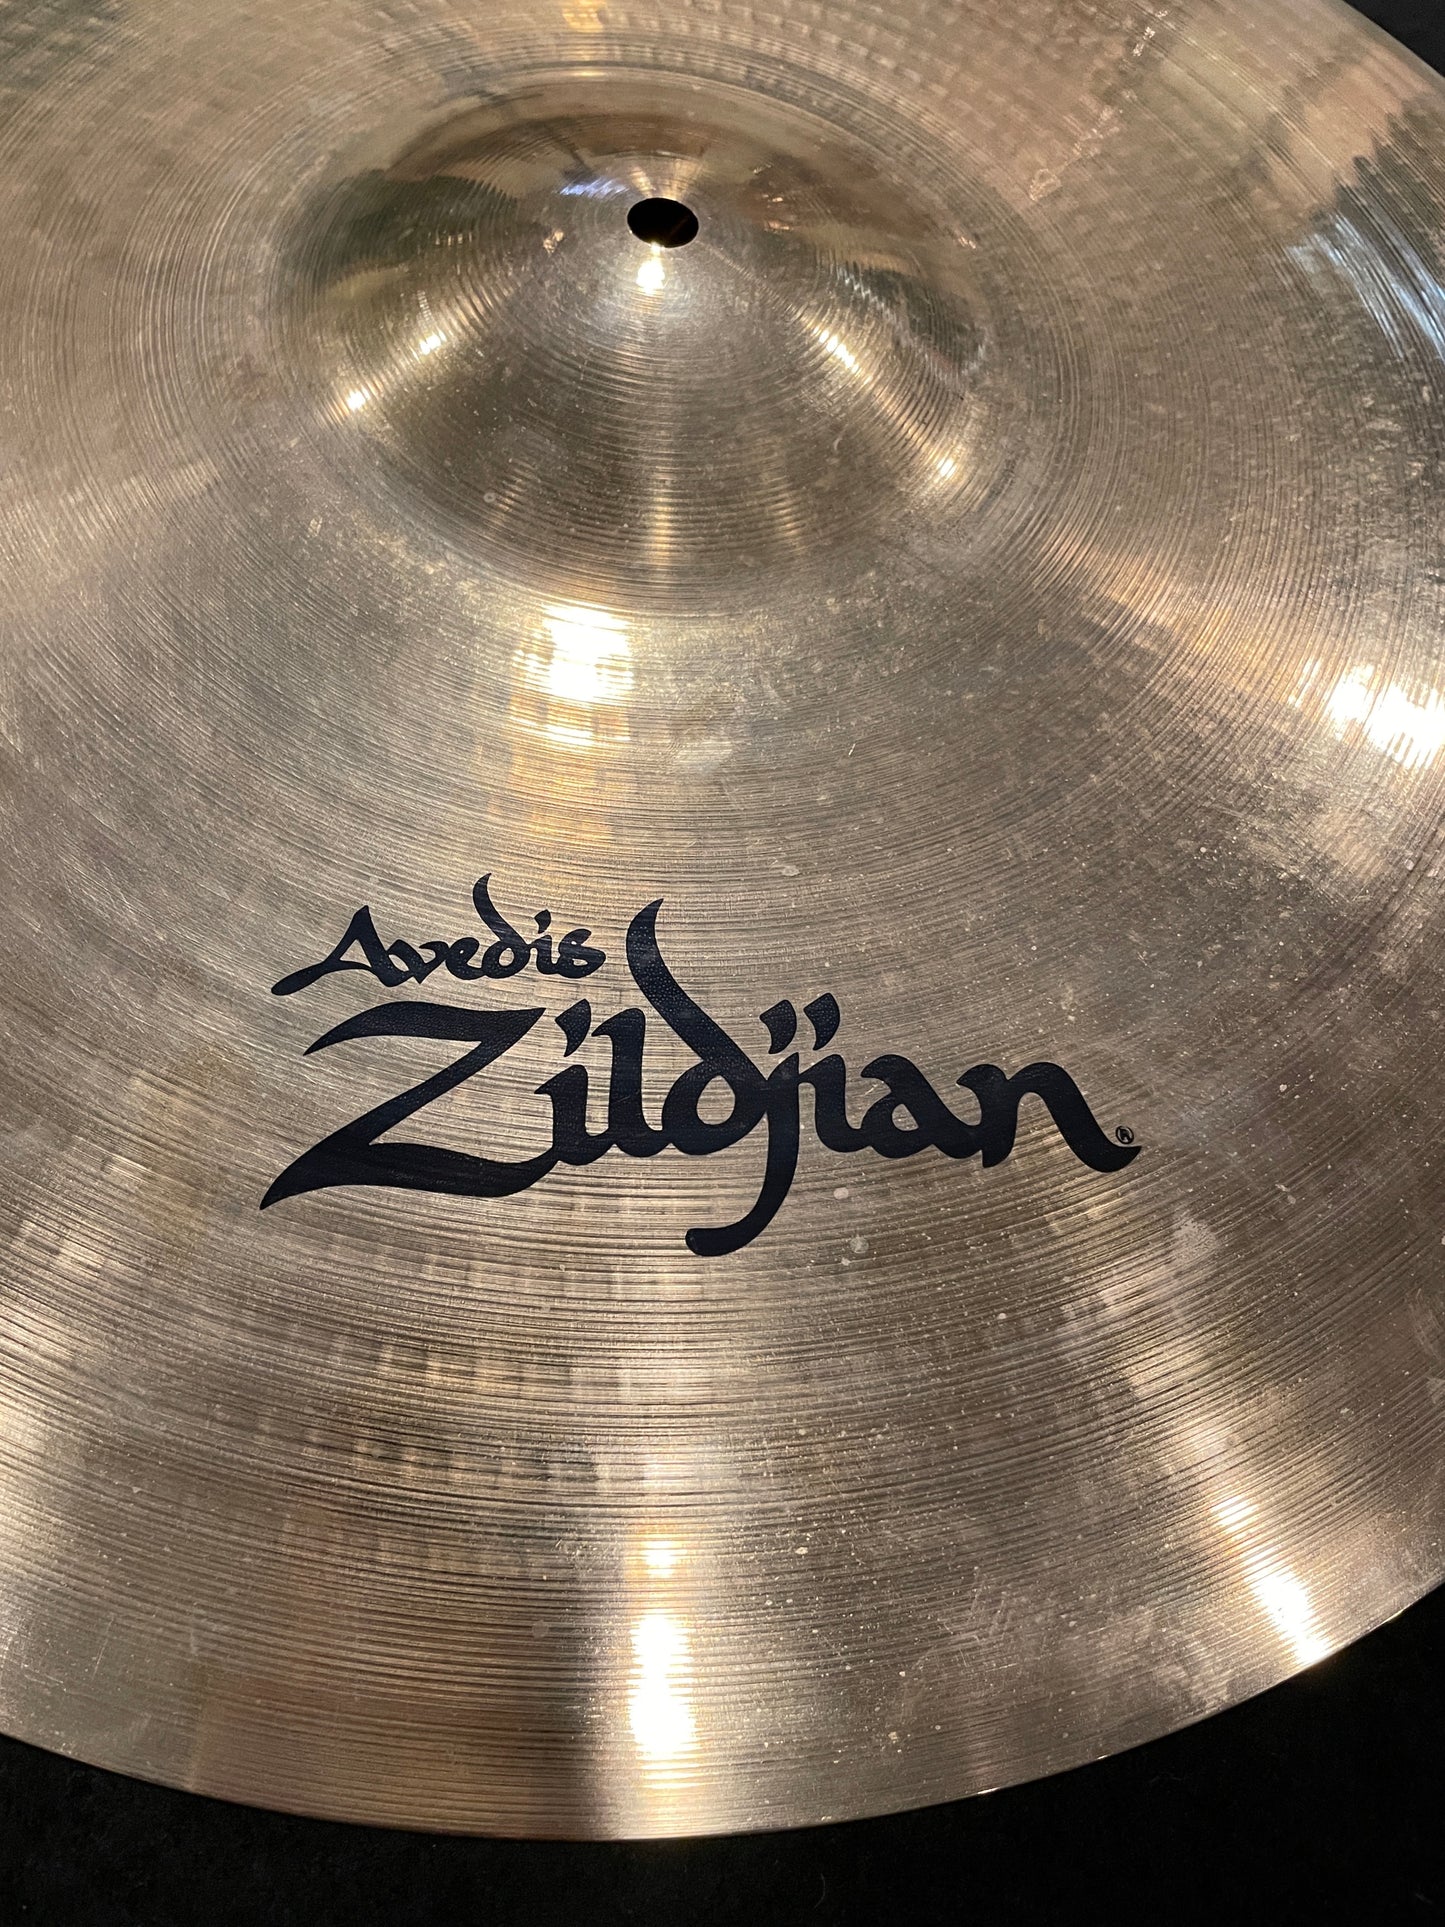 20" Zildjian A Custom Ride Cymbal 2206g